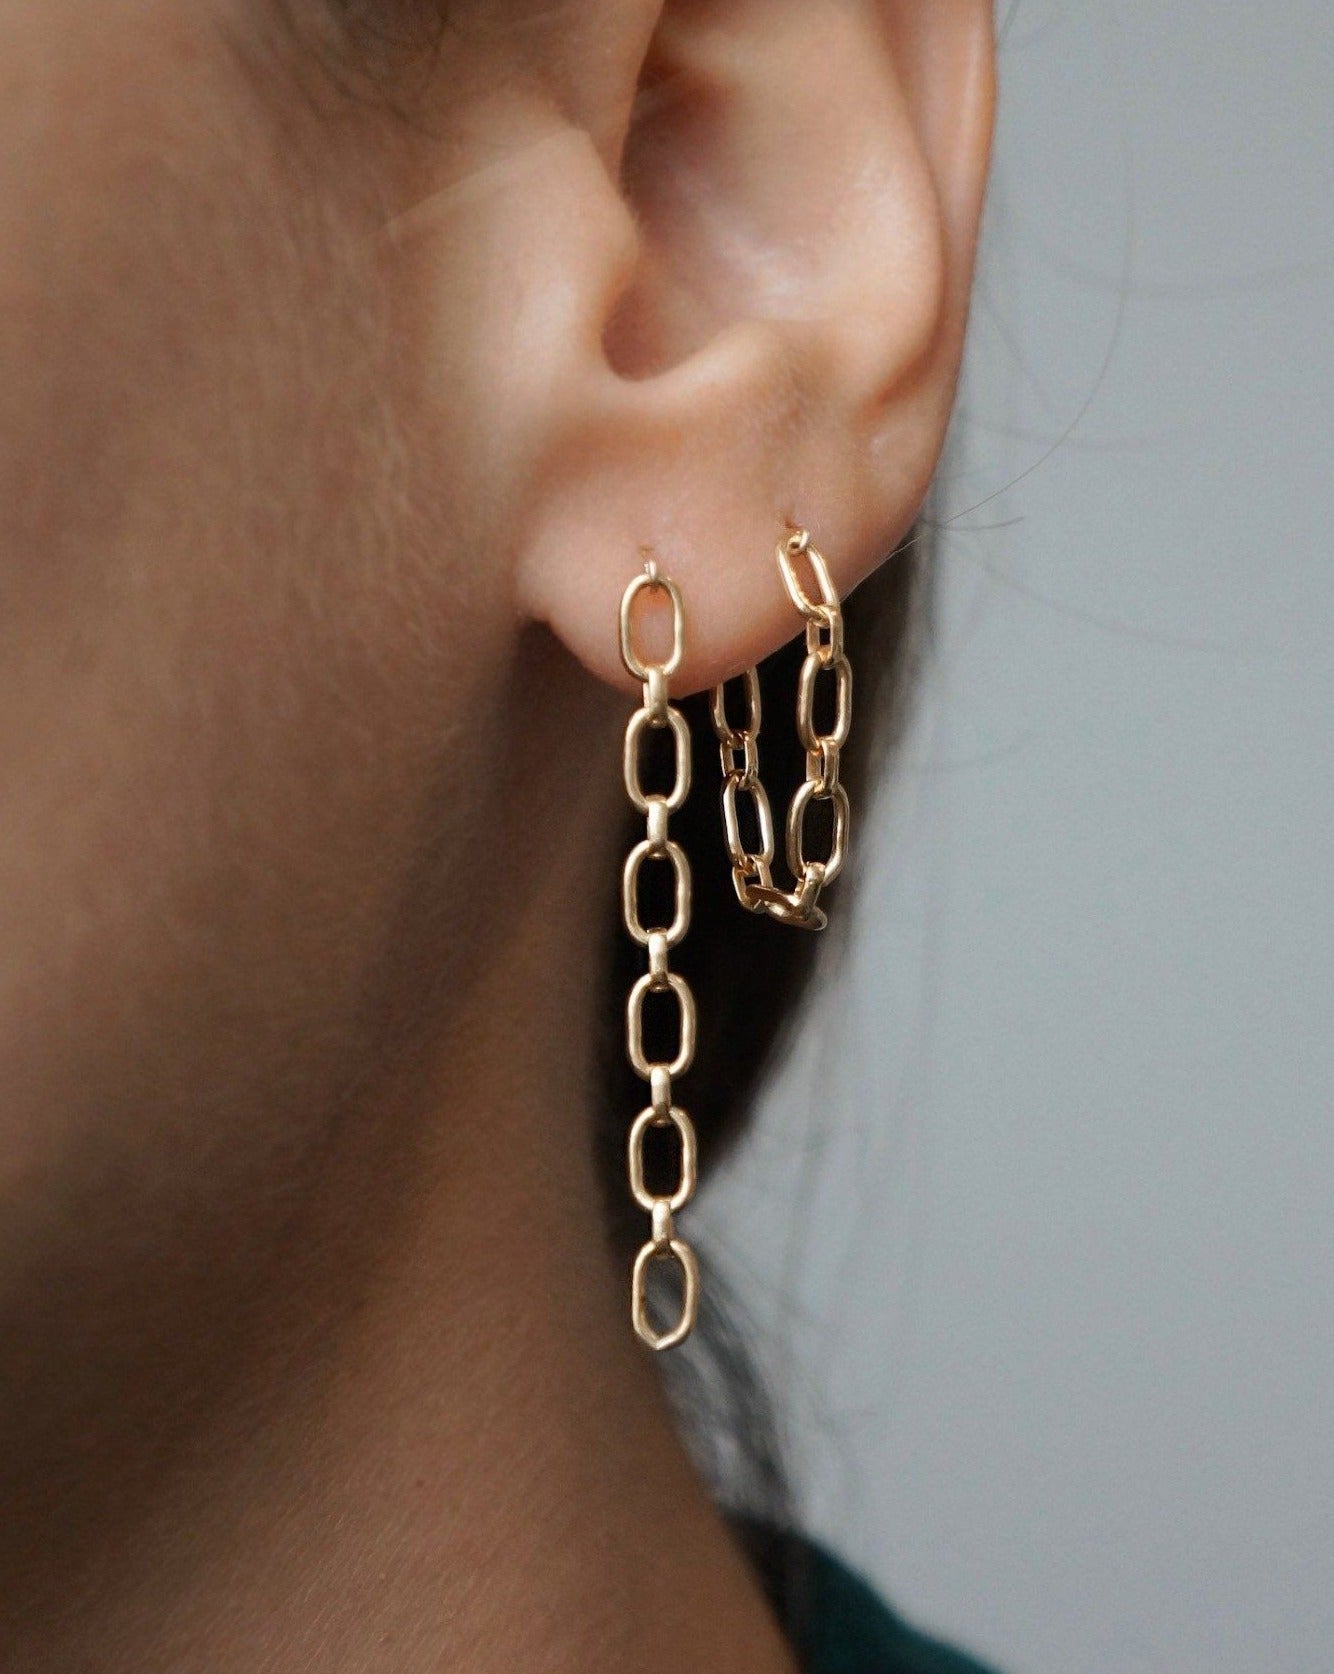 Sita Earrings by KOZAKH. Chain dangling earrings in 14K Gold Filled.